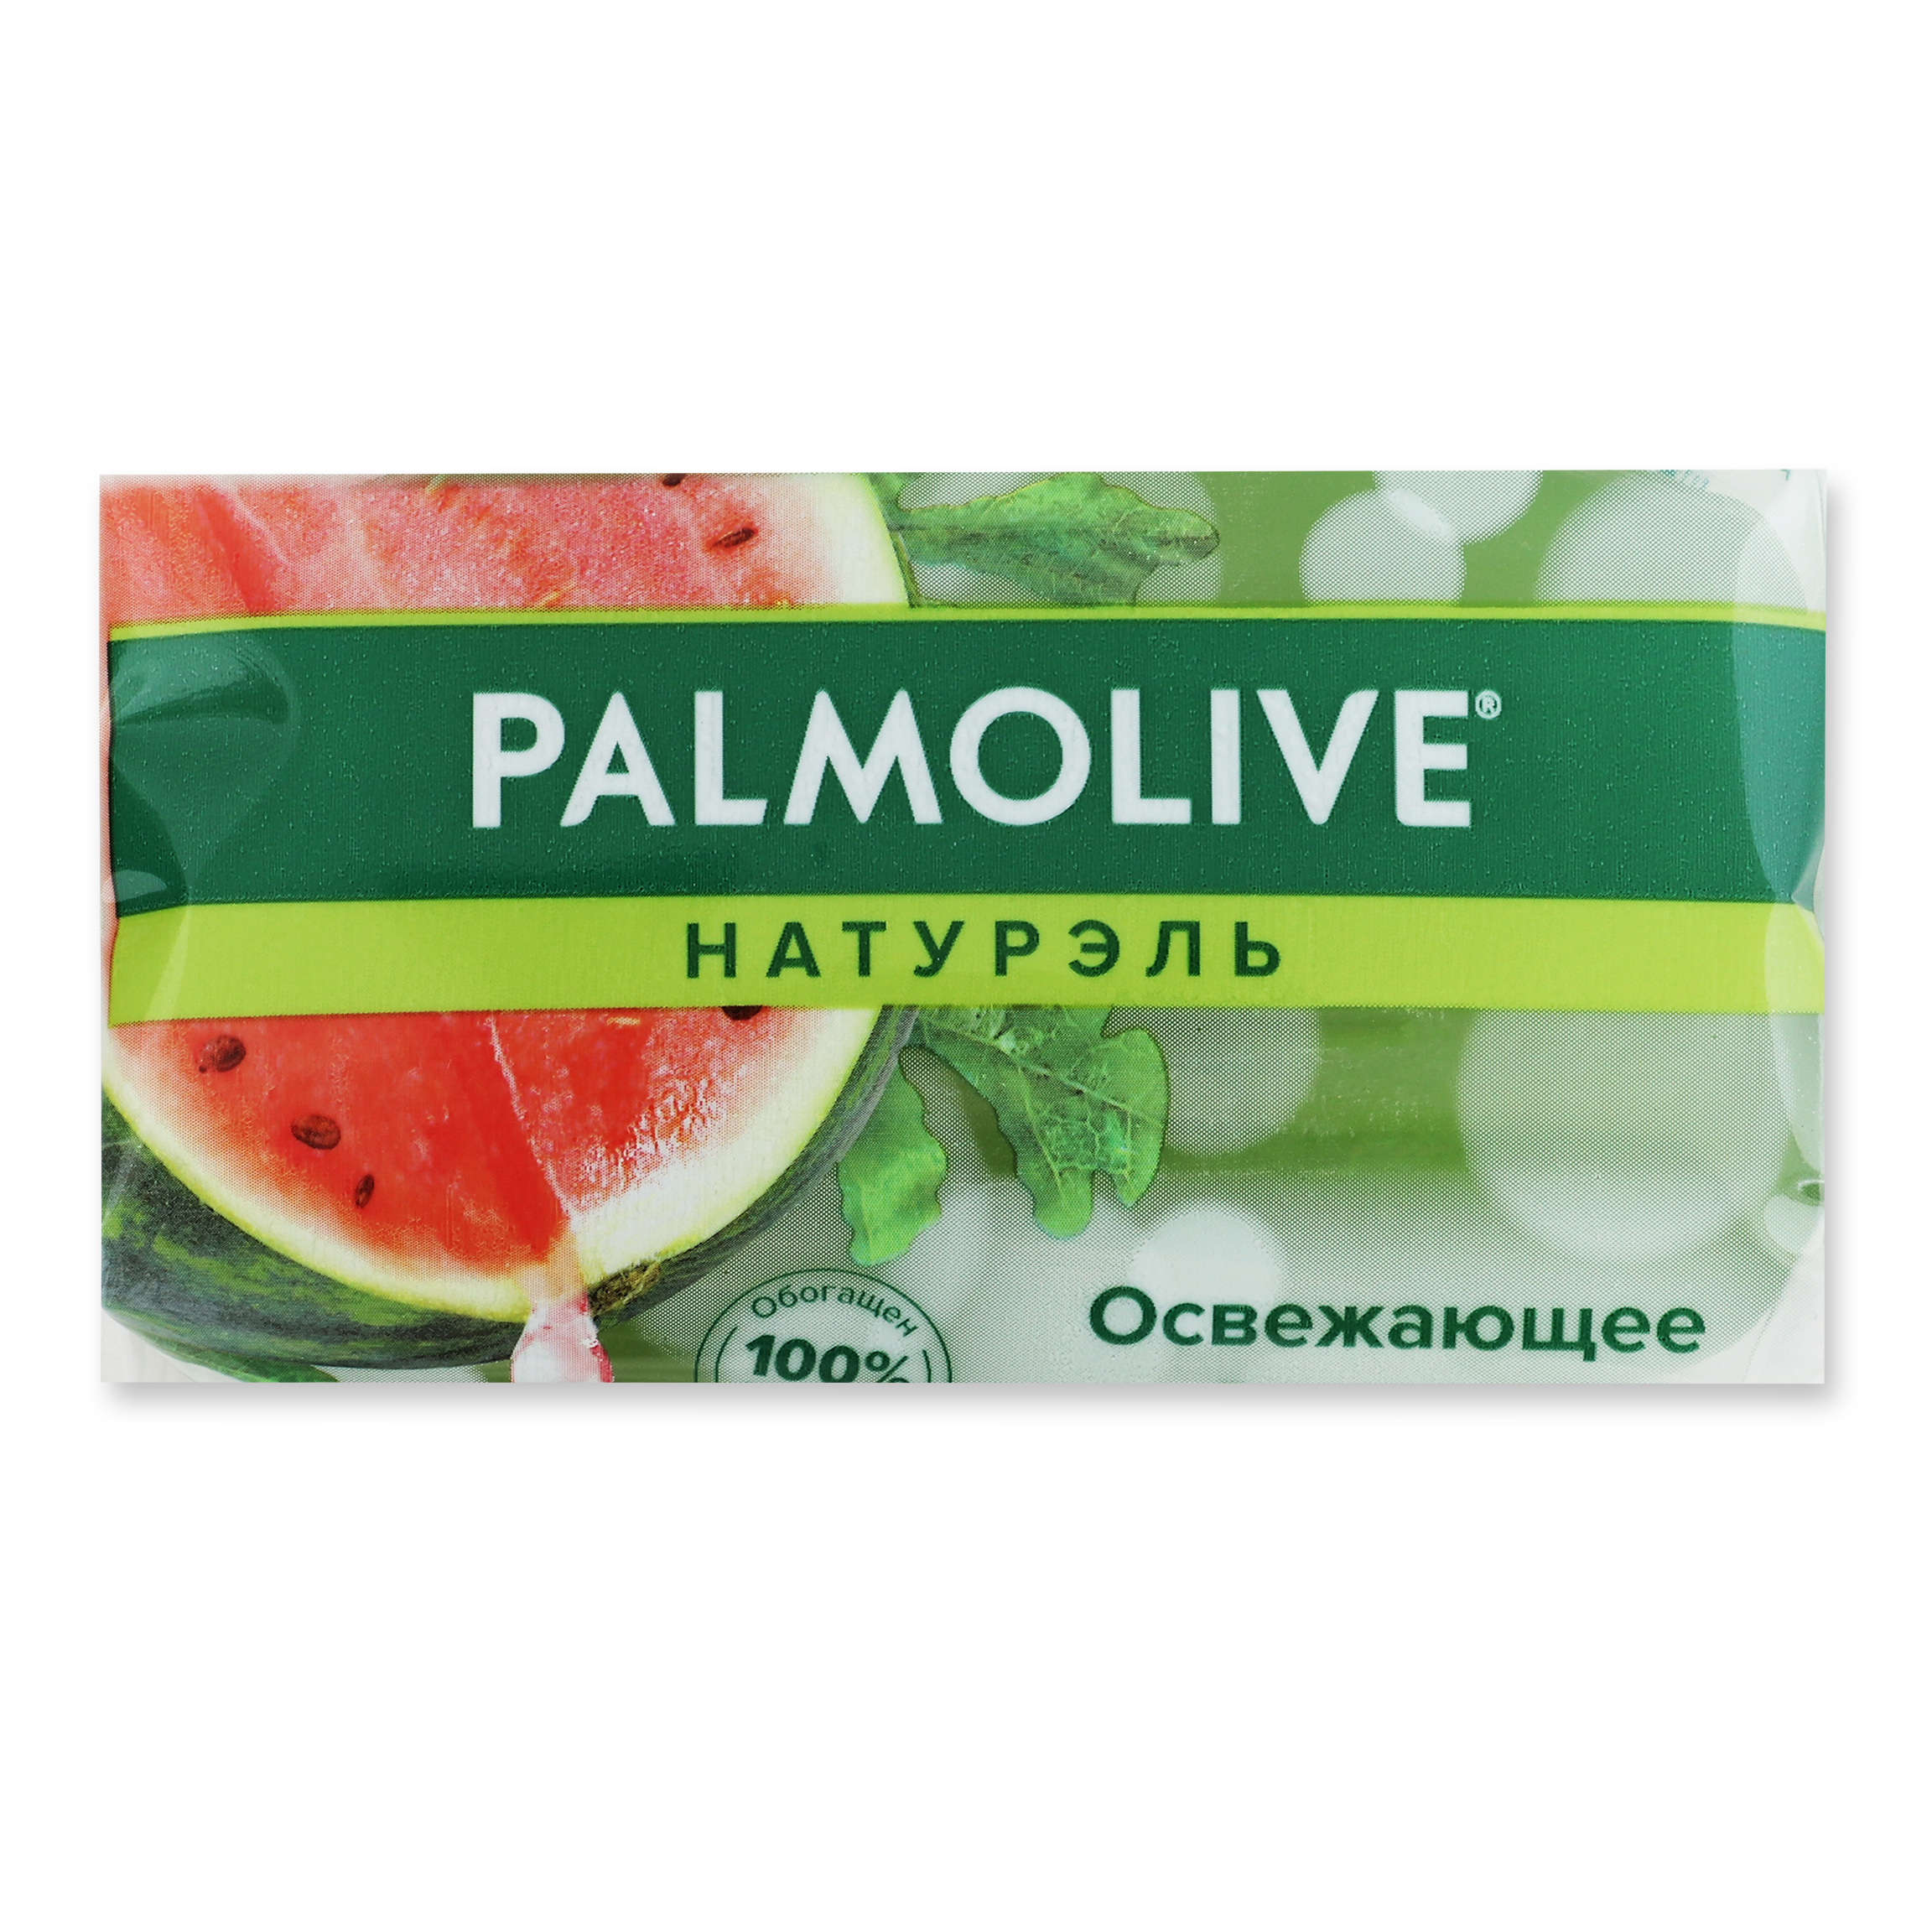 Мыло Palmolive Натурэль Освежающее Летний Арбуз глицериновое 90г